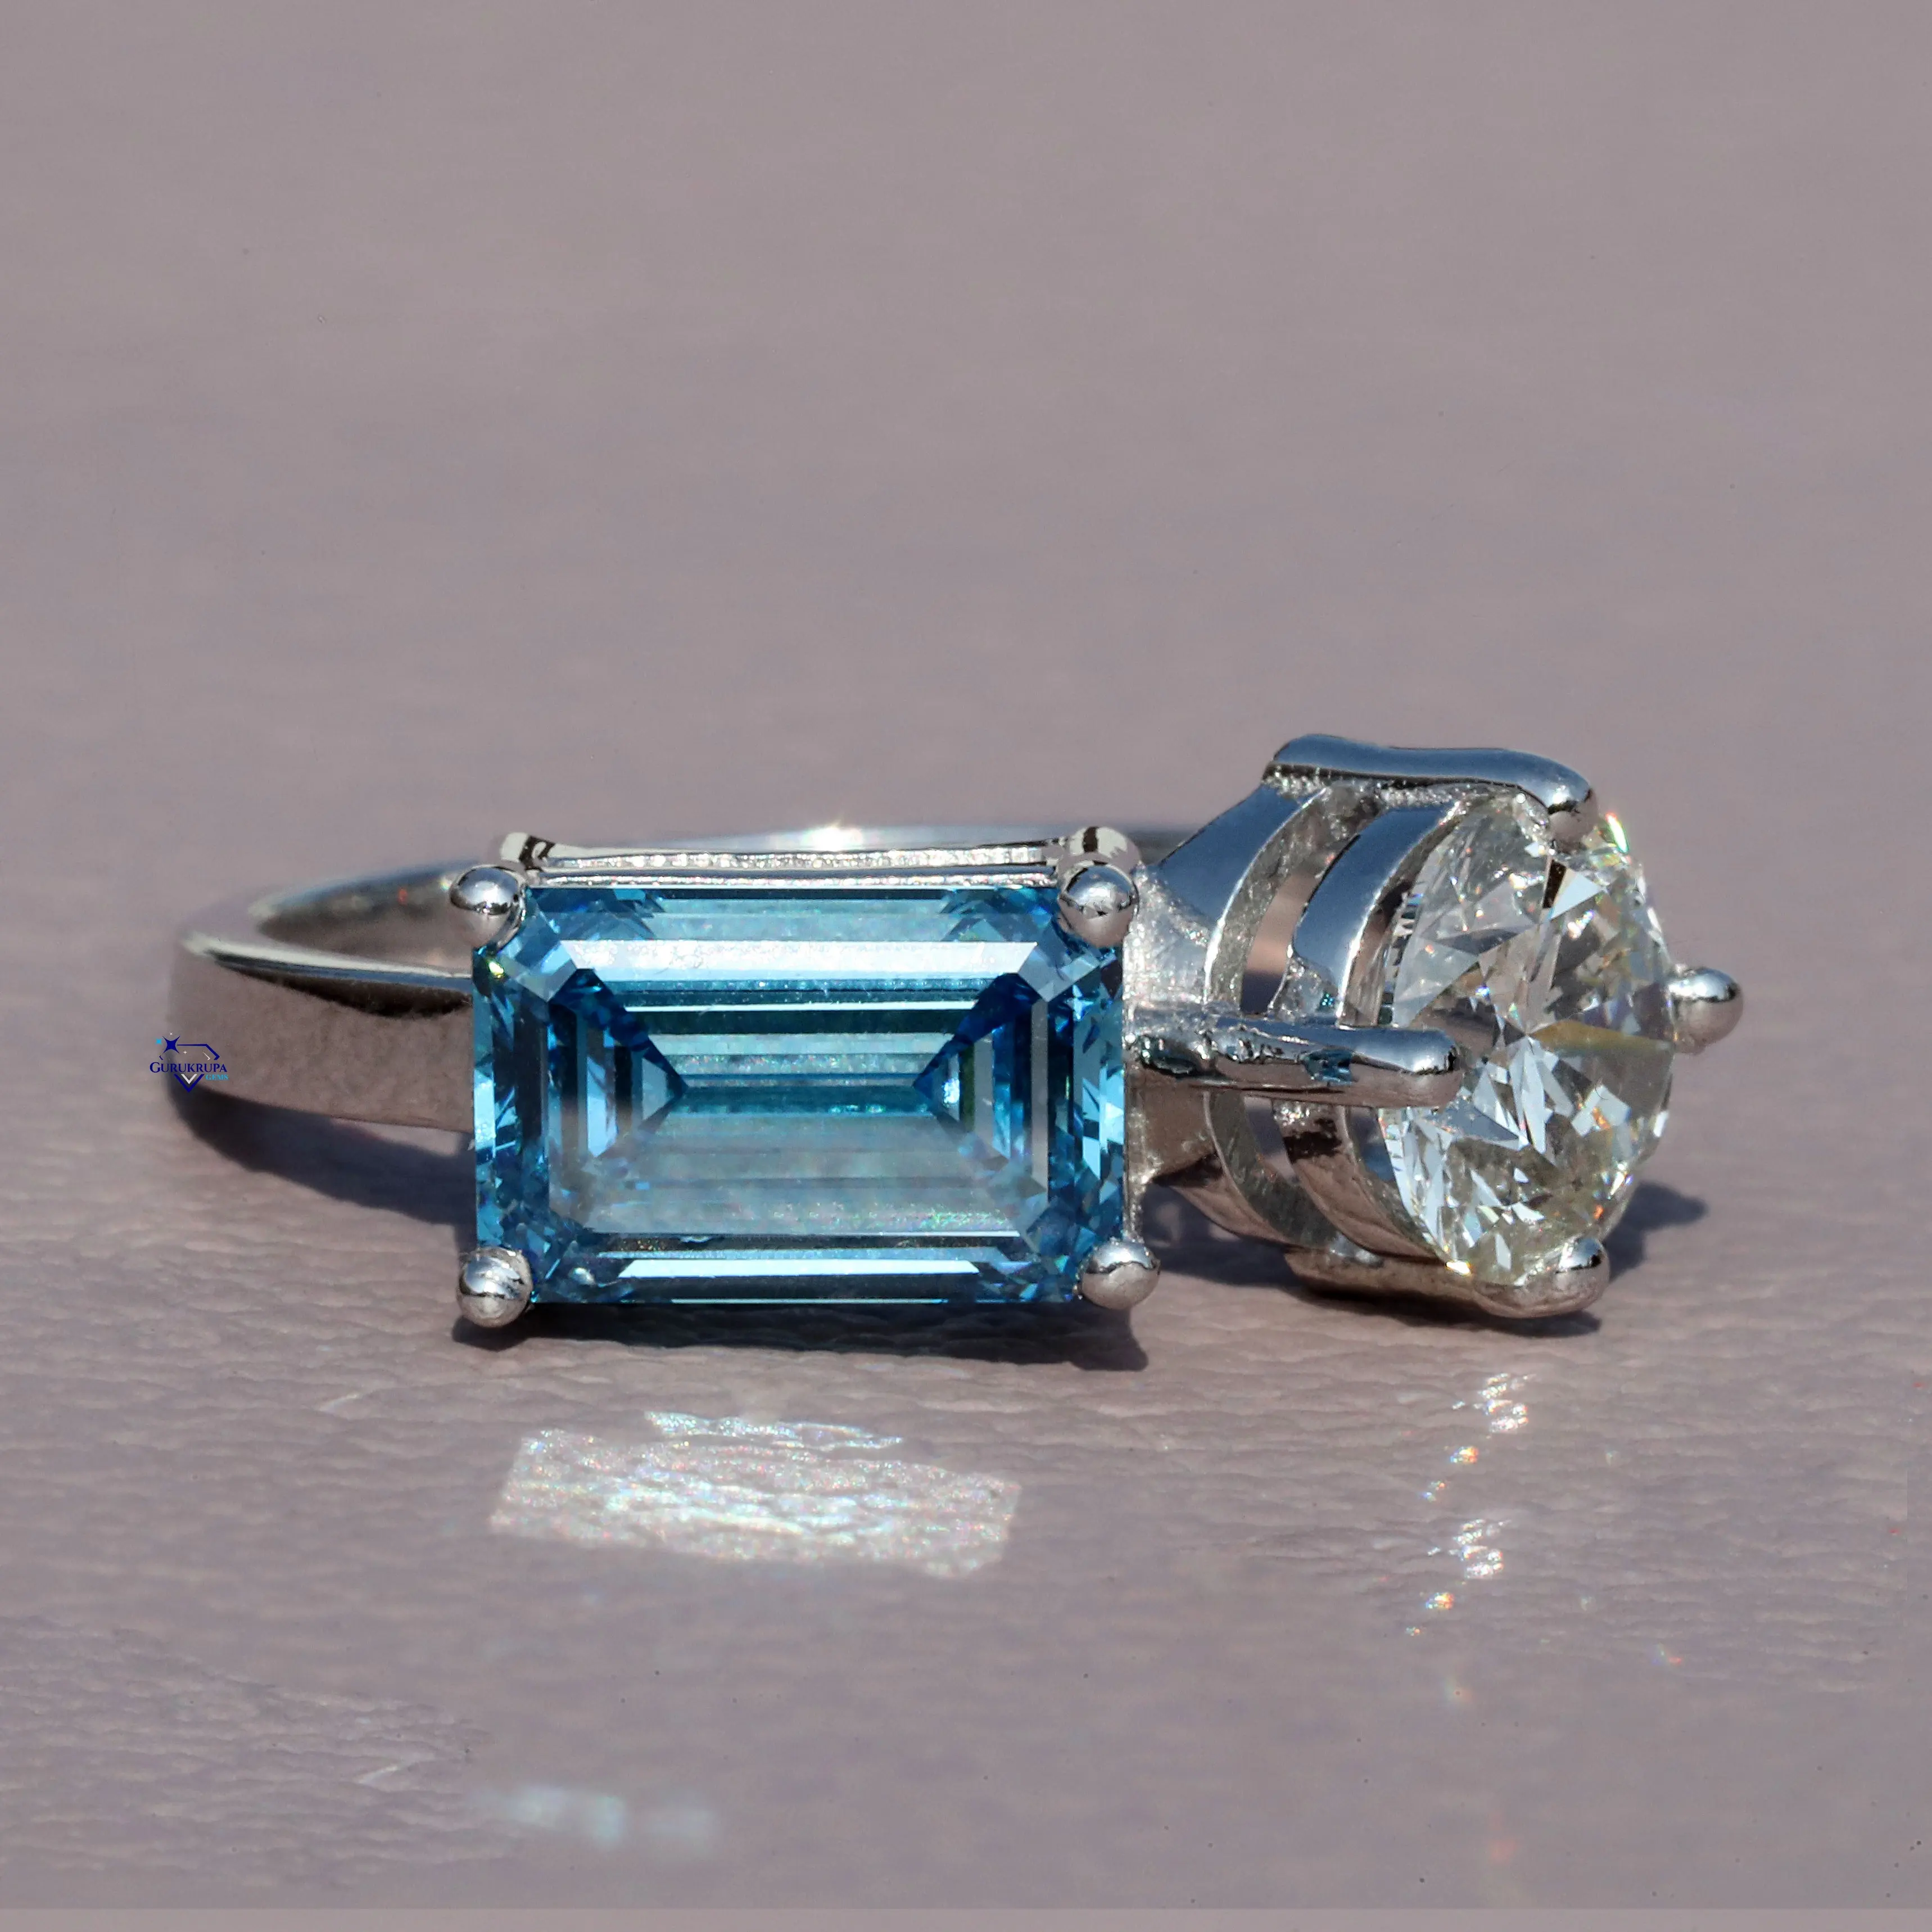 उन्नत वीवीएस स्पष्टता के साथ 925 स्टर्लिंग सिल्वर प्रयोगशाला में विकसित हीरे में एक सुंदर अंगूठी पन्ना और गोल कट दो पत्थर डिजाइन